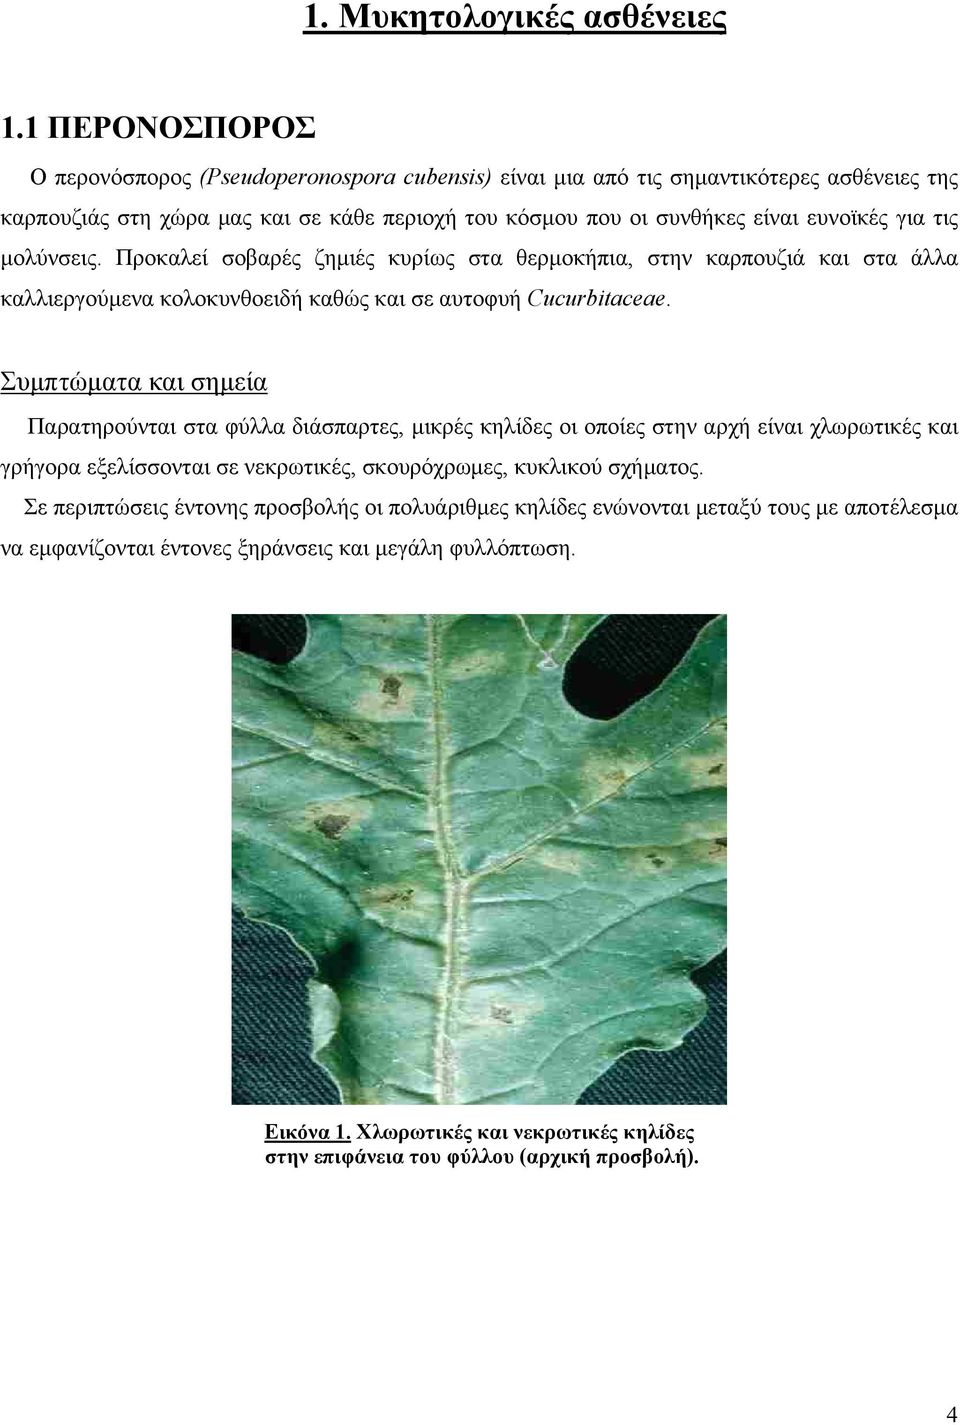 μολύνσεις. Προκαλεί σοβαρές ζημιές κυρίως στα θερμοκήπια, στην καρπουζιά και στα άλλα καλλιεργούμενα κολοκυνθοειδή καθώς και σε αυτοφυή Cucurbitaceae.